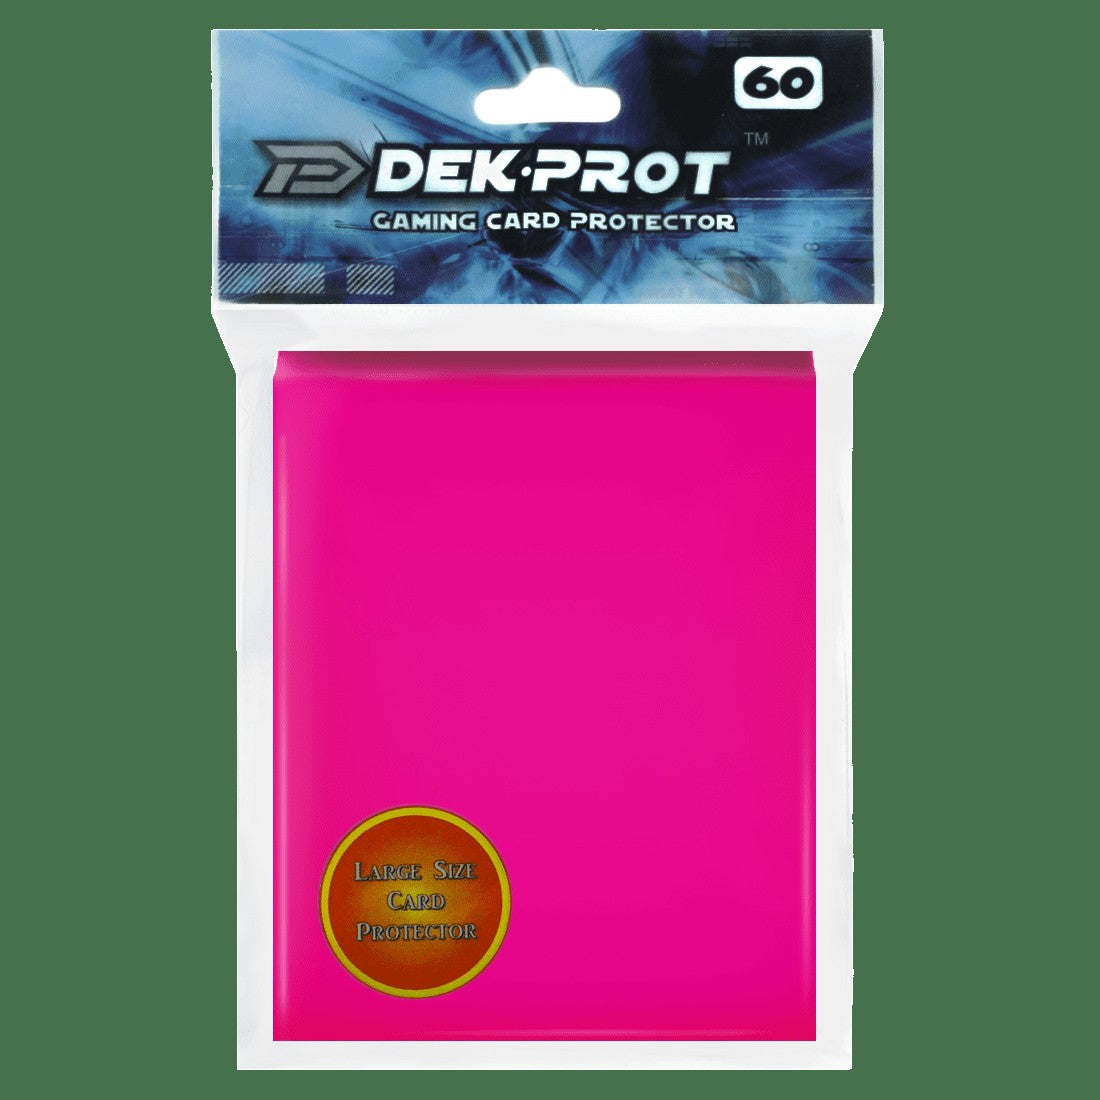 Dek Prot Standard Sized Card Sleeves - Rose Red (60 Card Sleeves)